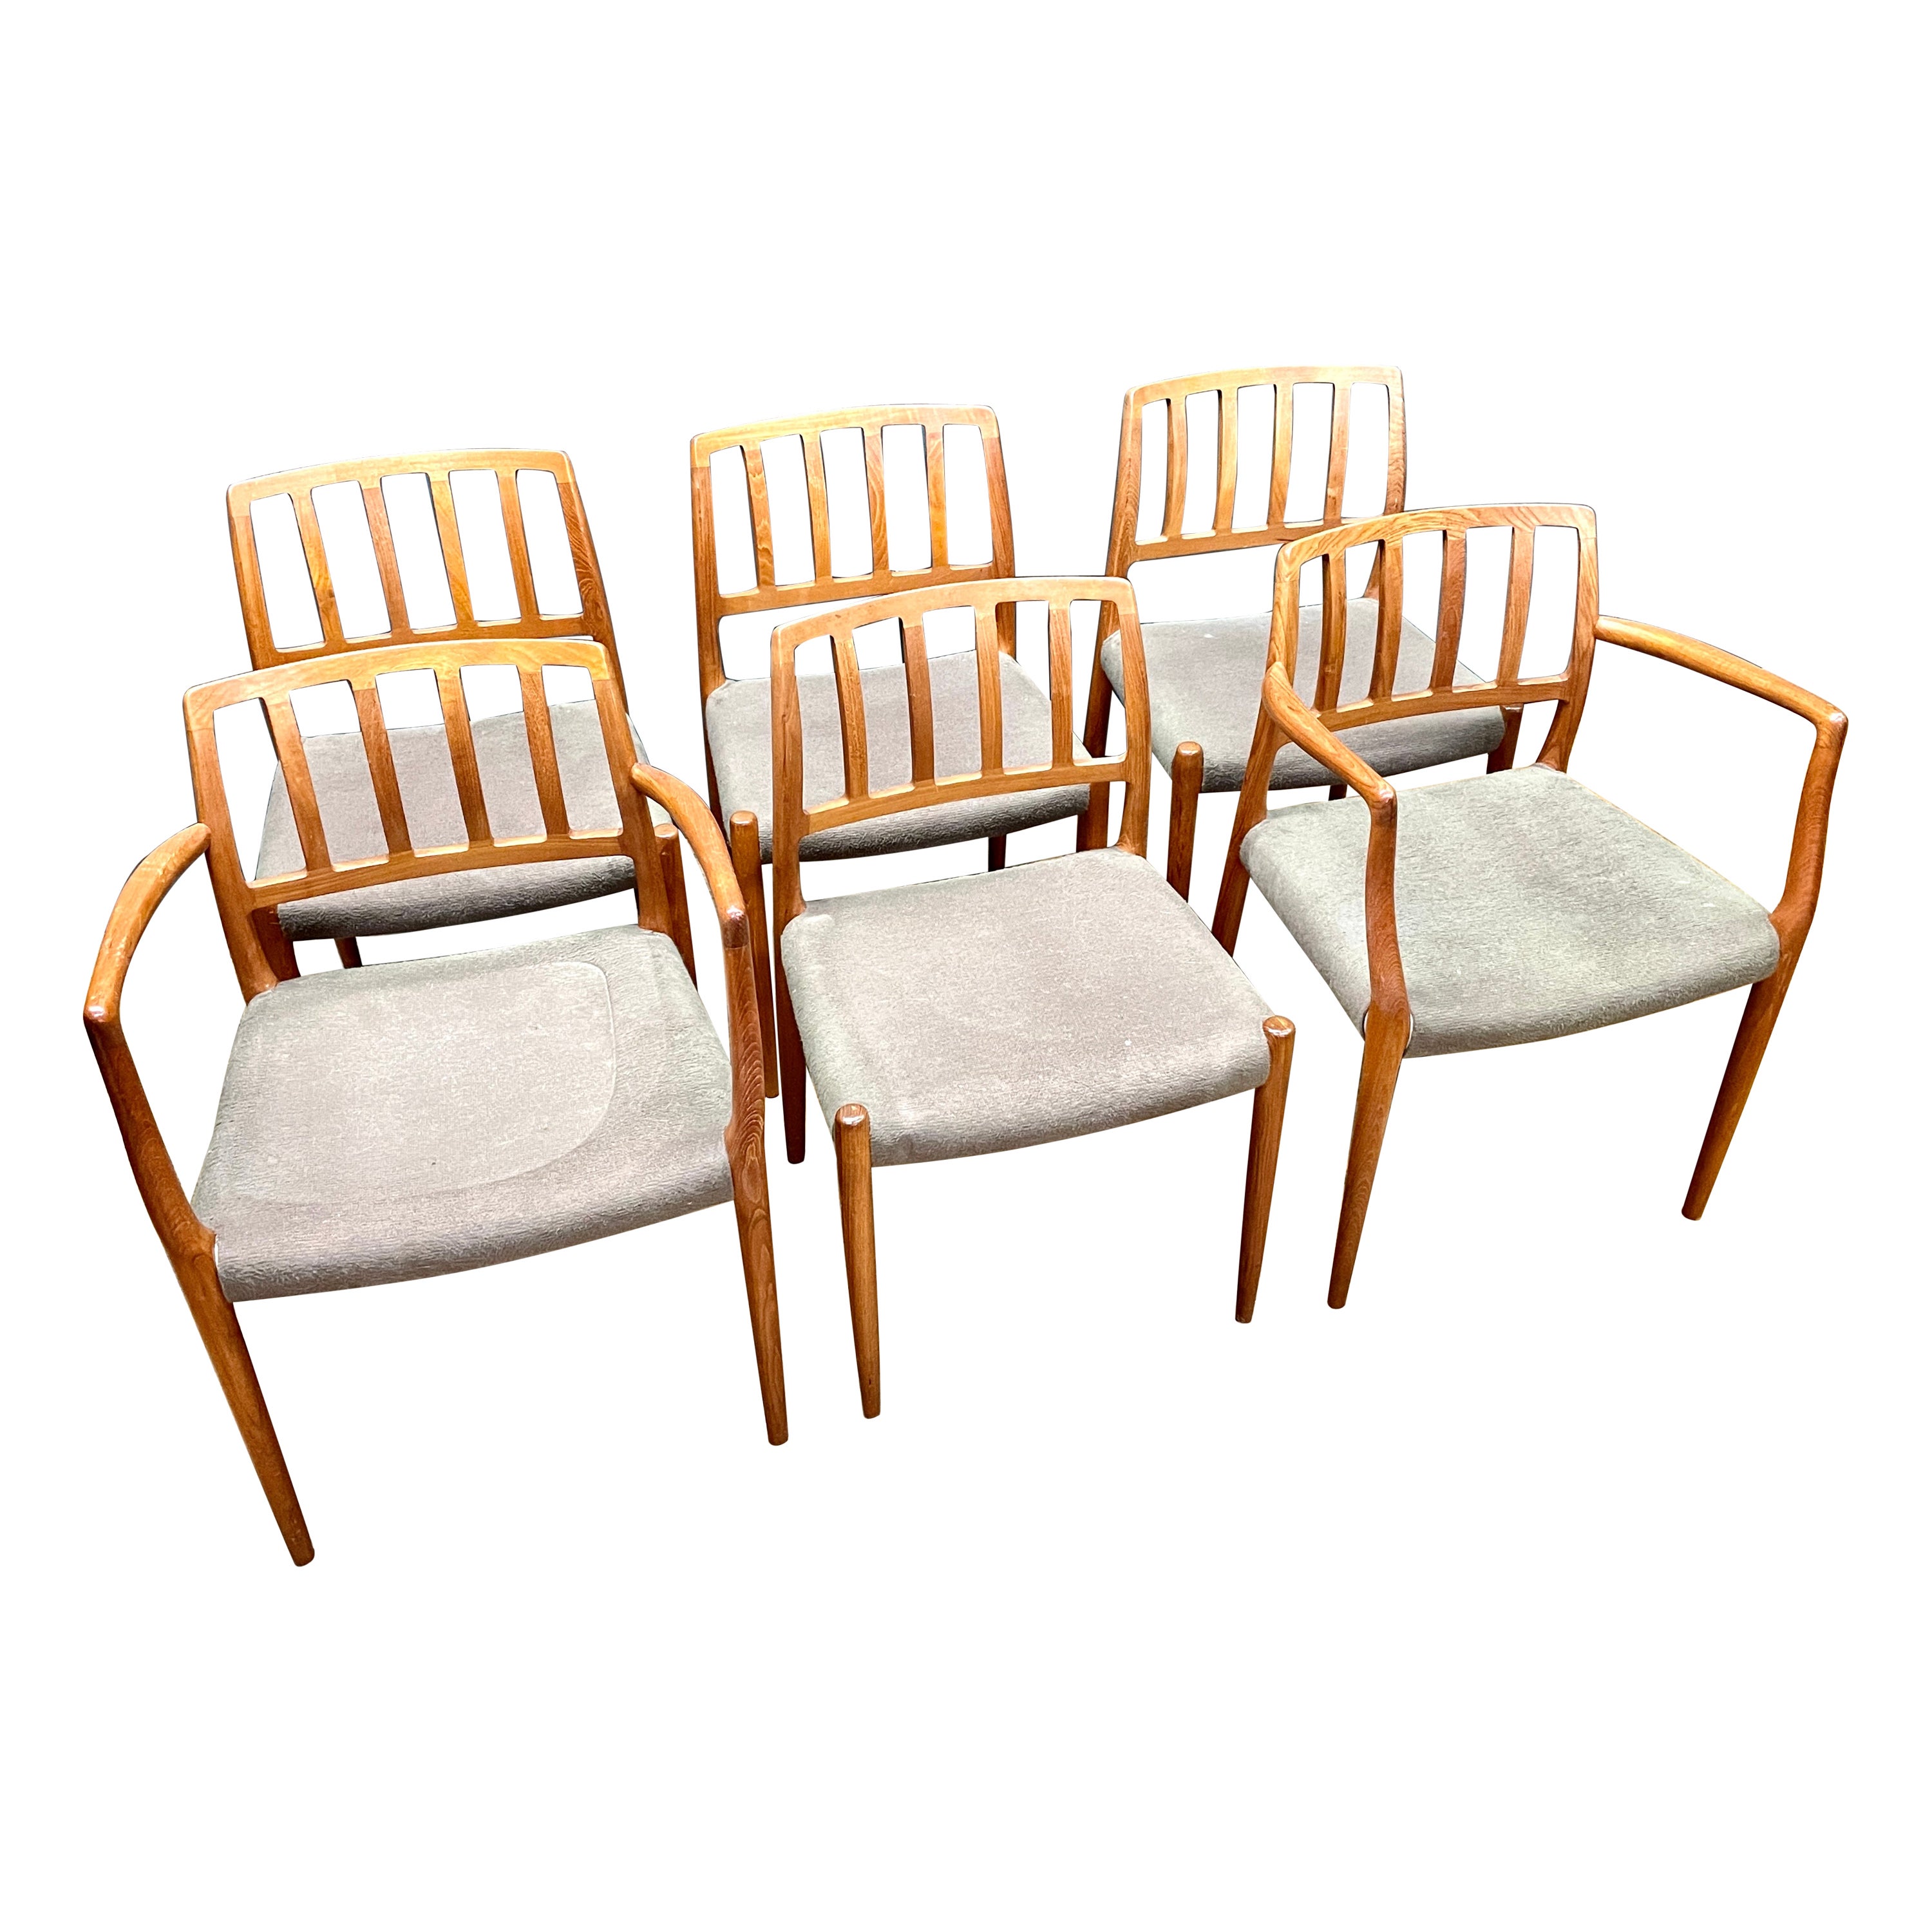 6 Danish Teak Upholstered Chairs + Armchairs Niels Møller JL Moller Model Nº 83